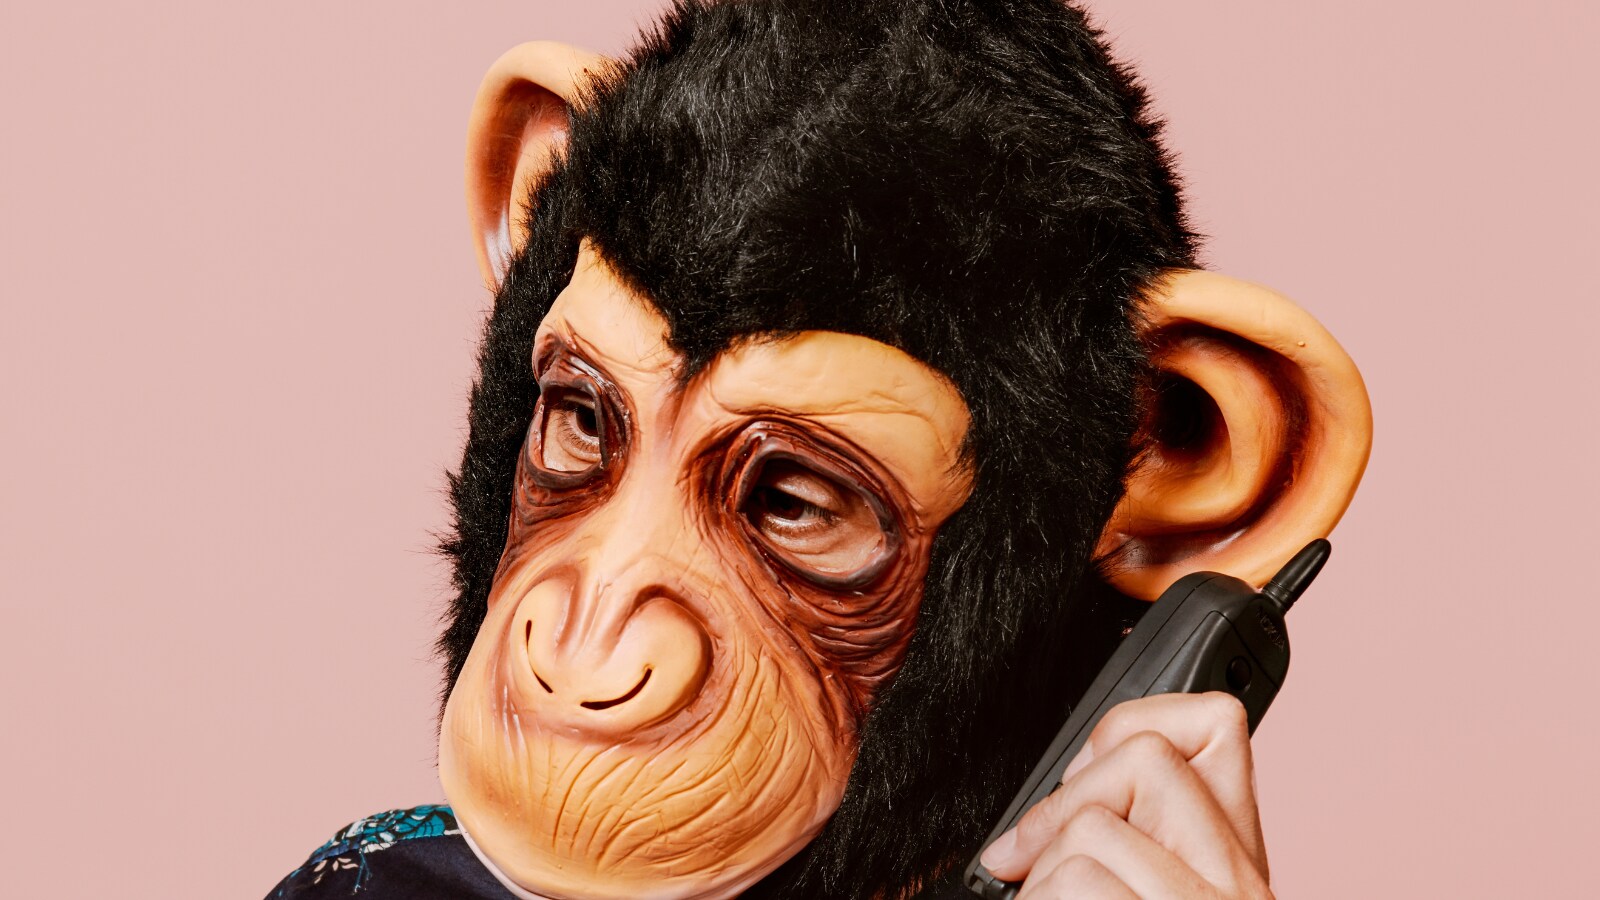 Monkey grabs phone, calls 911 at California zoo